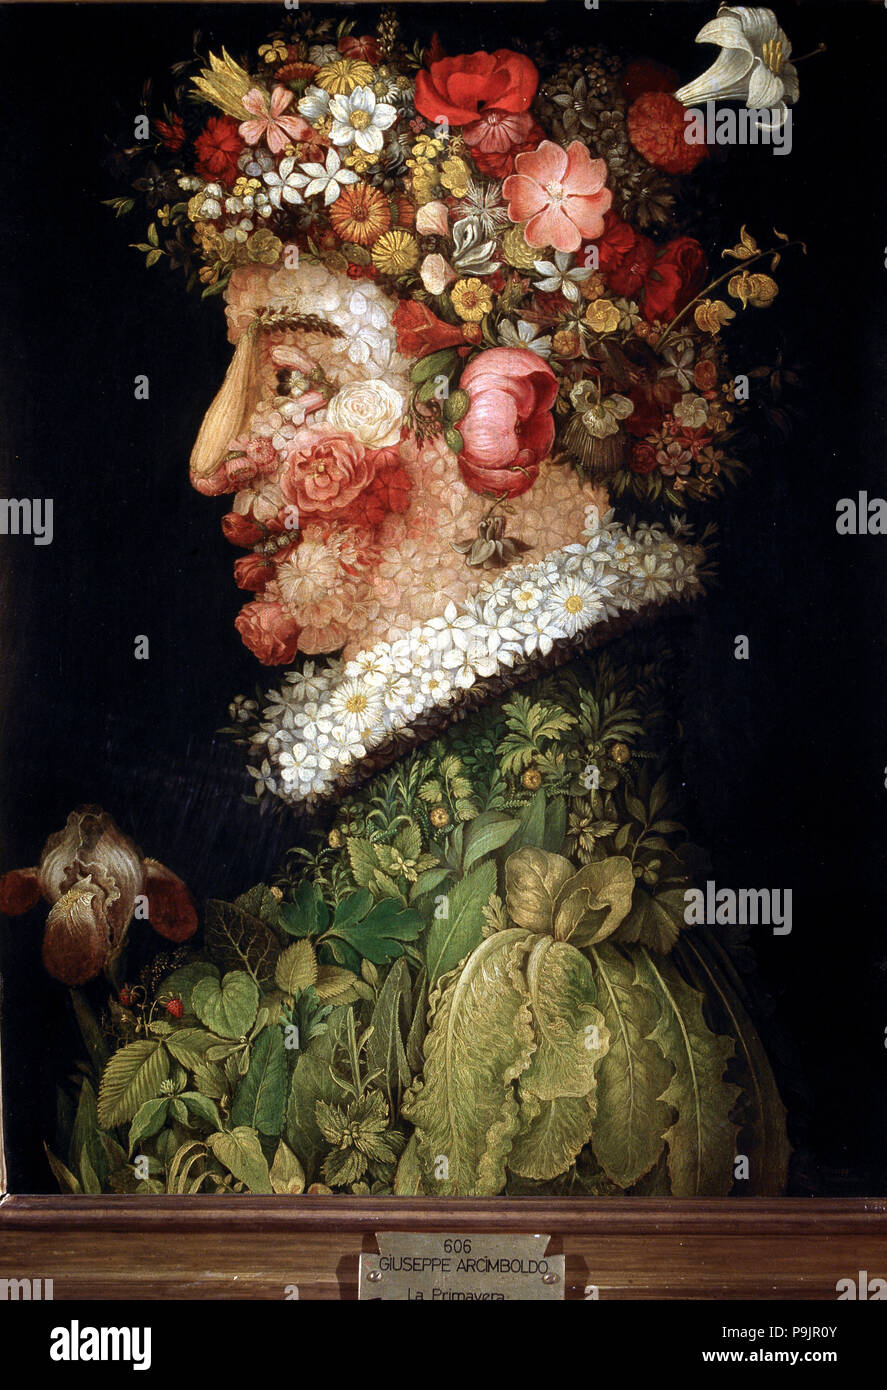 Le printemps", huile sur toile, il fait partie d'une série 'Les Quatre saisons' par Arcimboldo. Banque D'Images